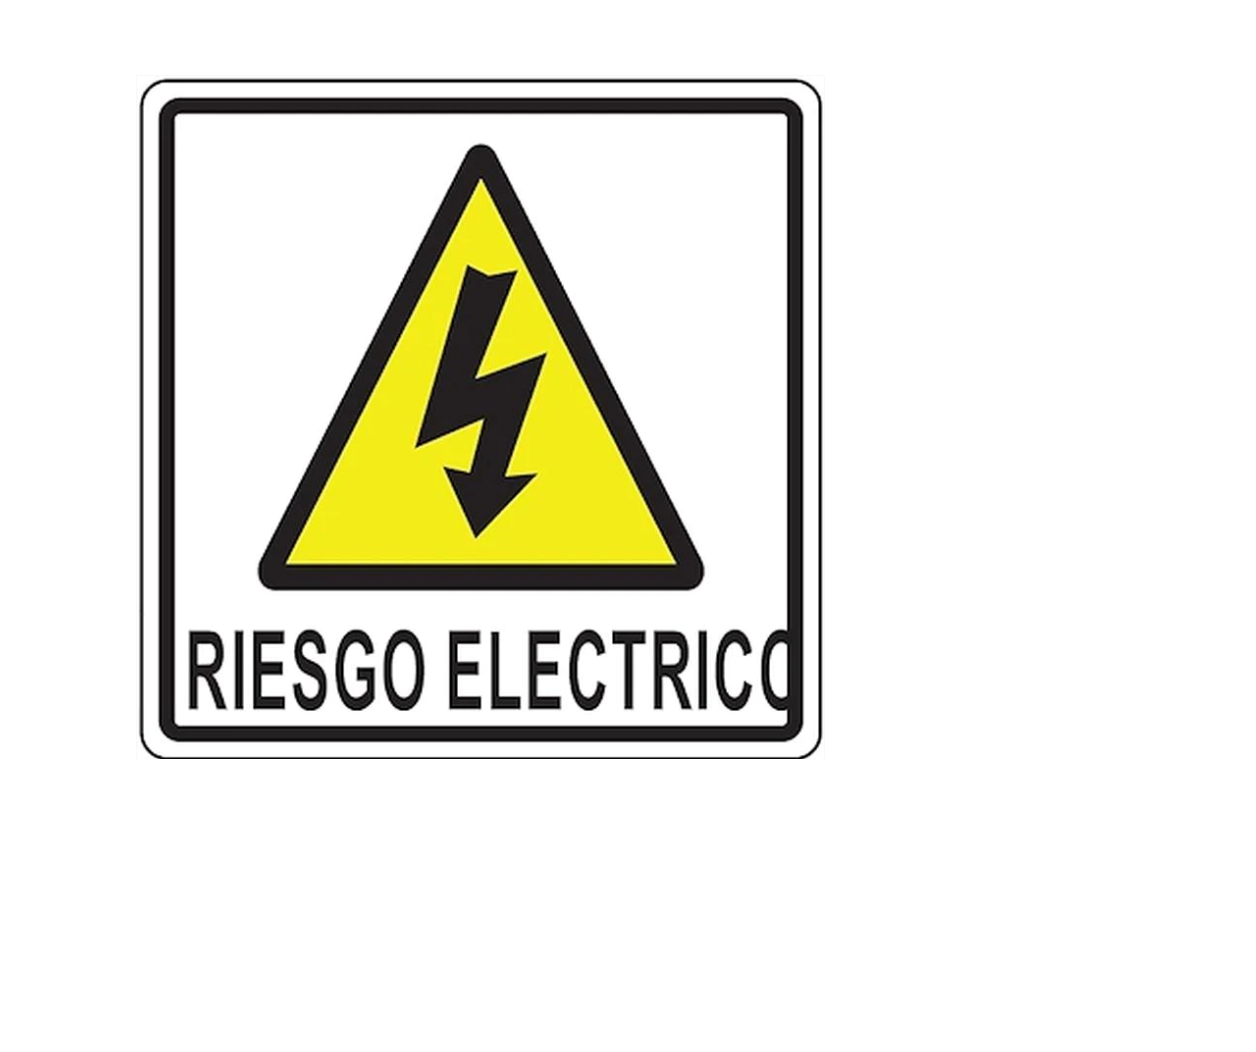 https://0201.nccdn.net/1_2/000/000/13a/716/riesgo-electrico.jpg